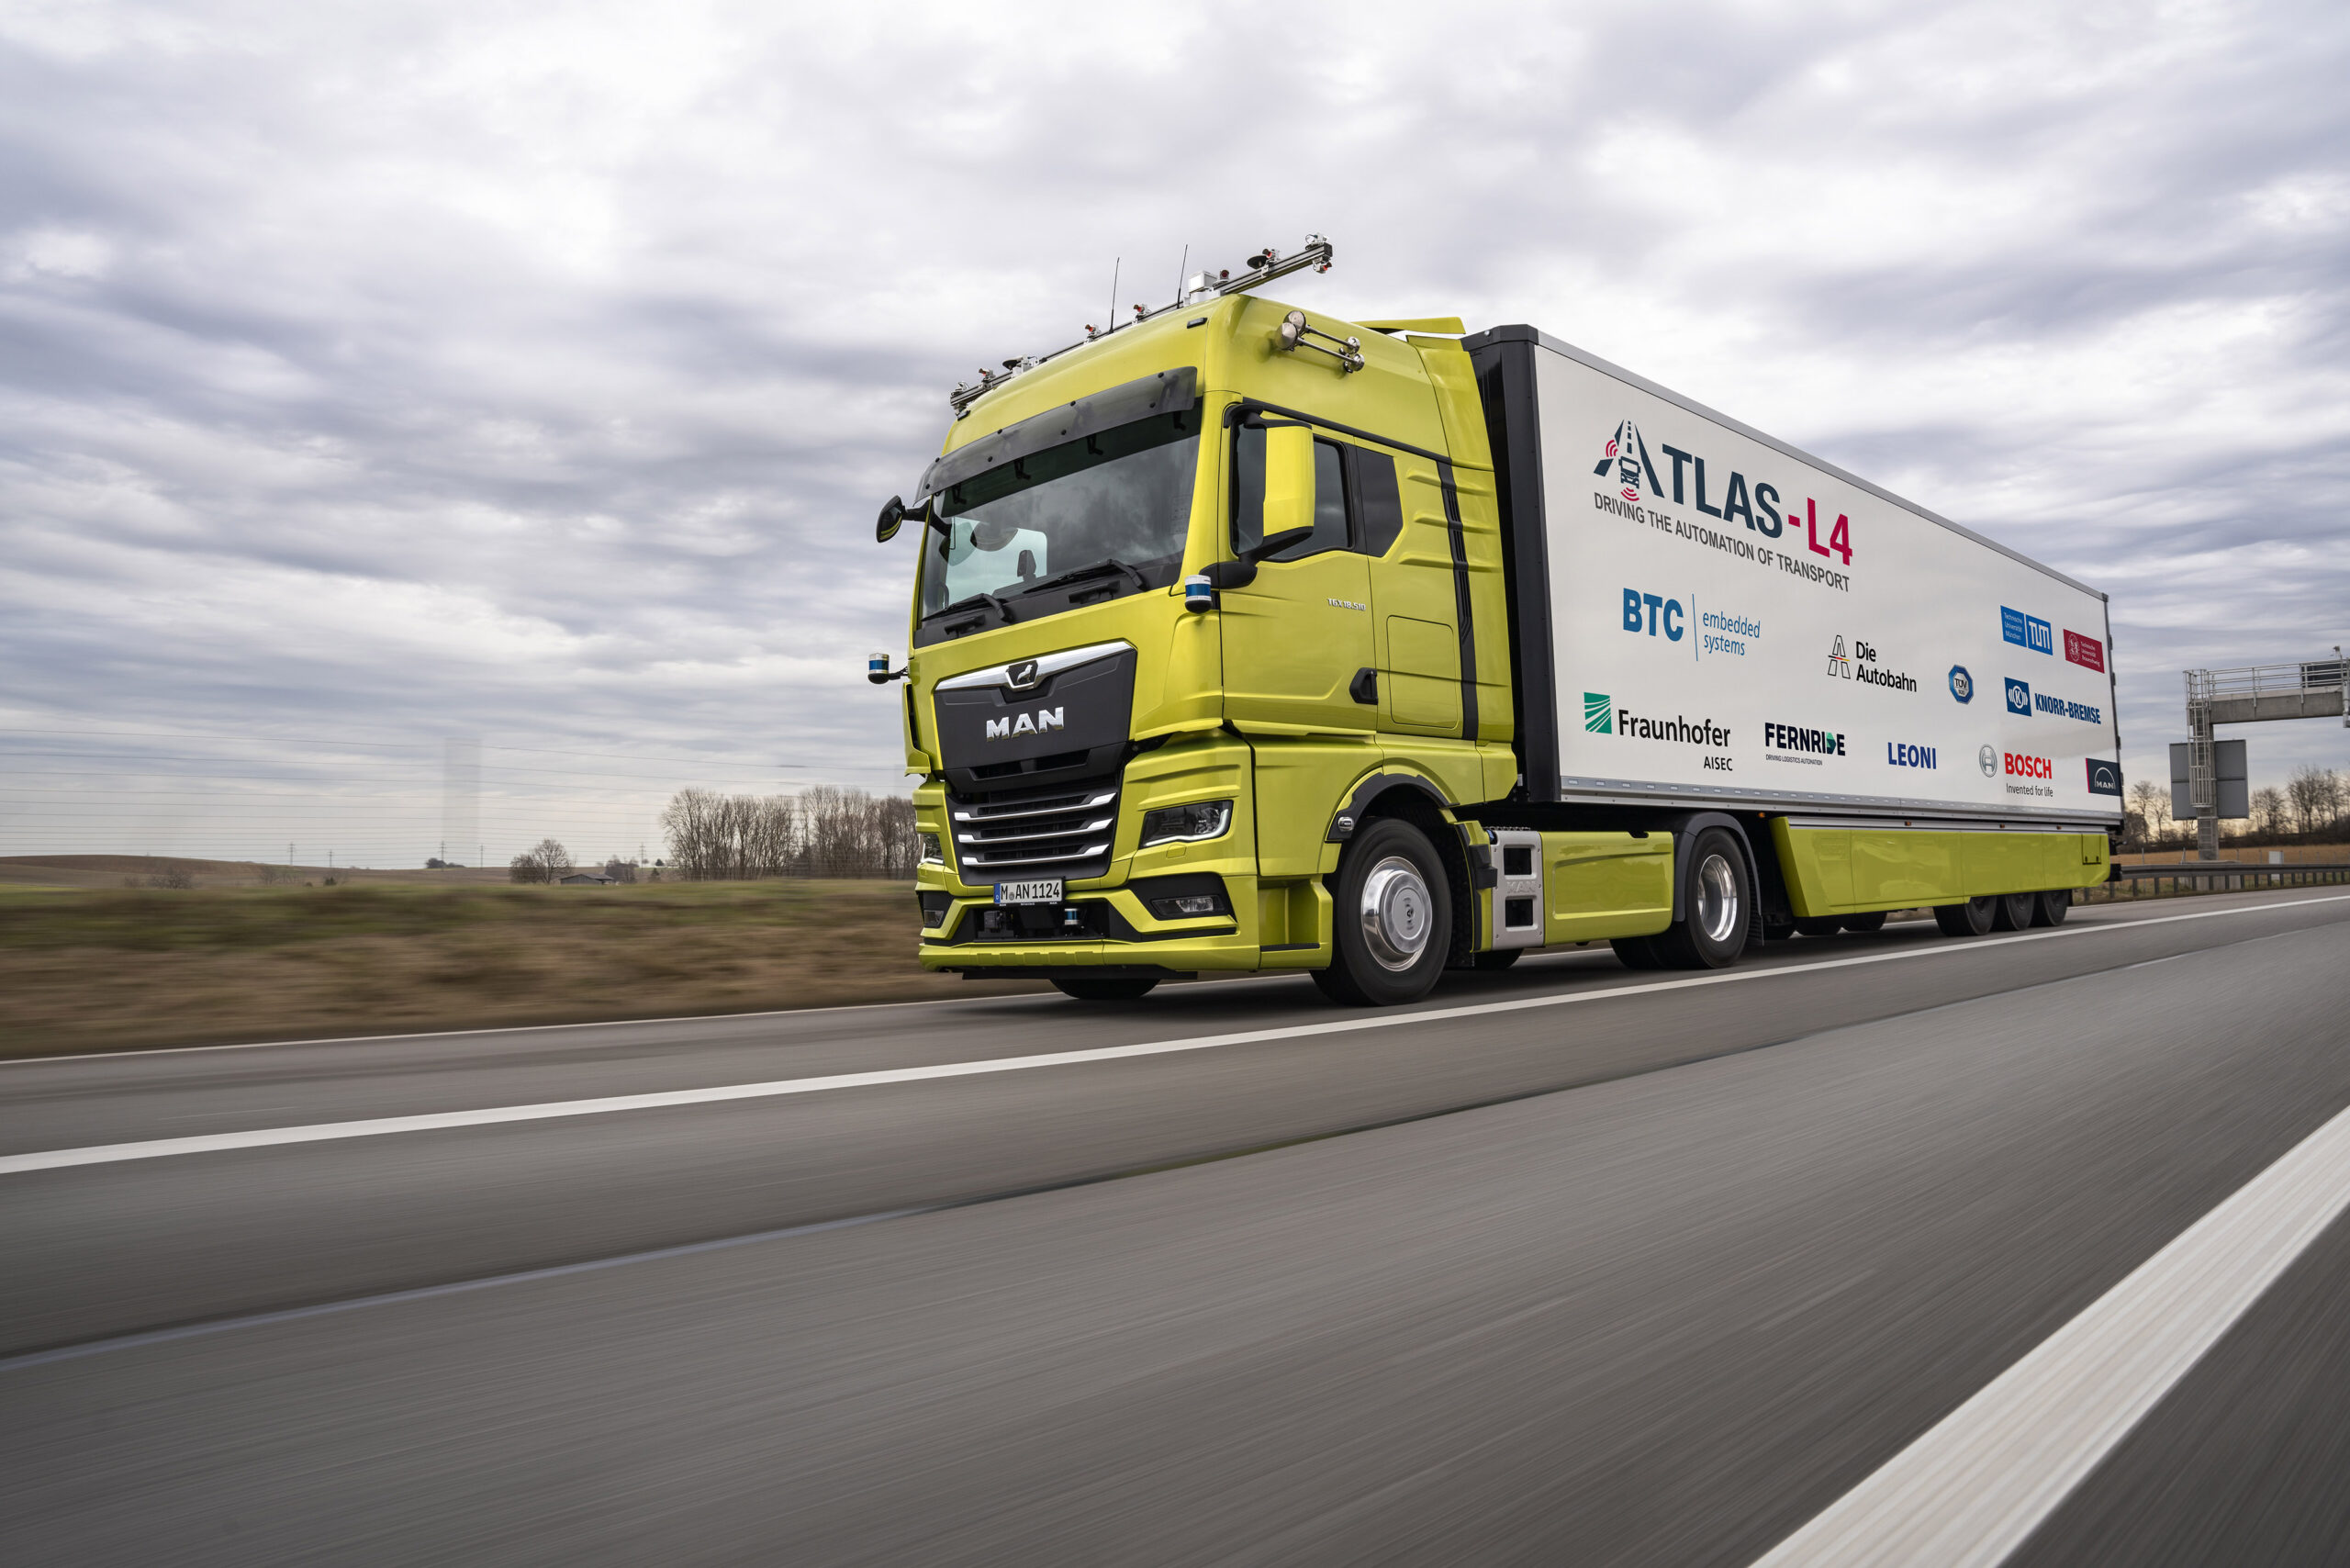 Camion a guida autonoma in autostrada: MAN Truck & Bus partner del progetto ATLAS-L4